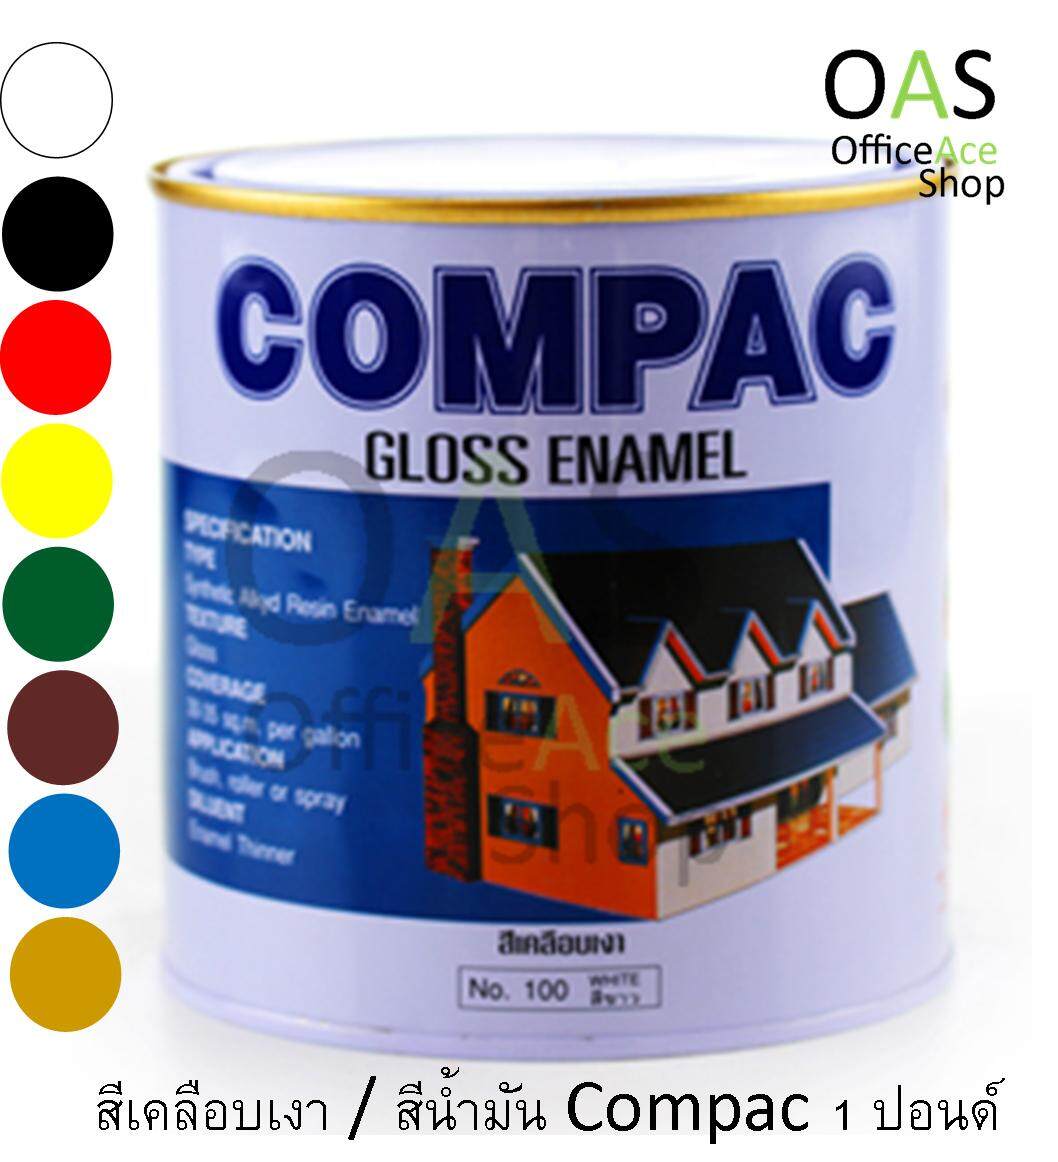 COMPAC Gloss Enamel สีเคลือบเงา บรรจุ 1 ปอนด์